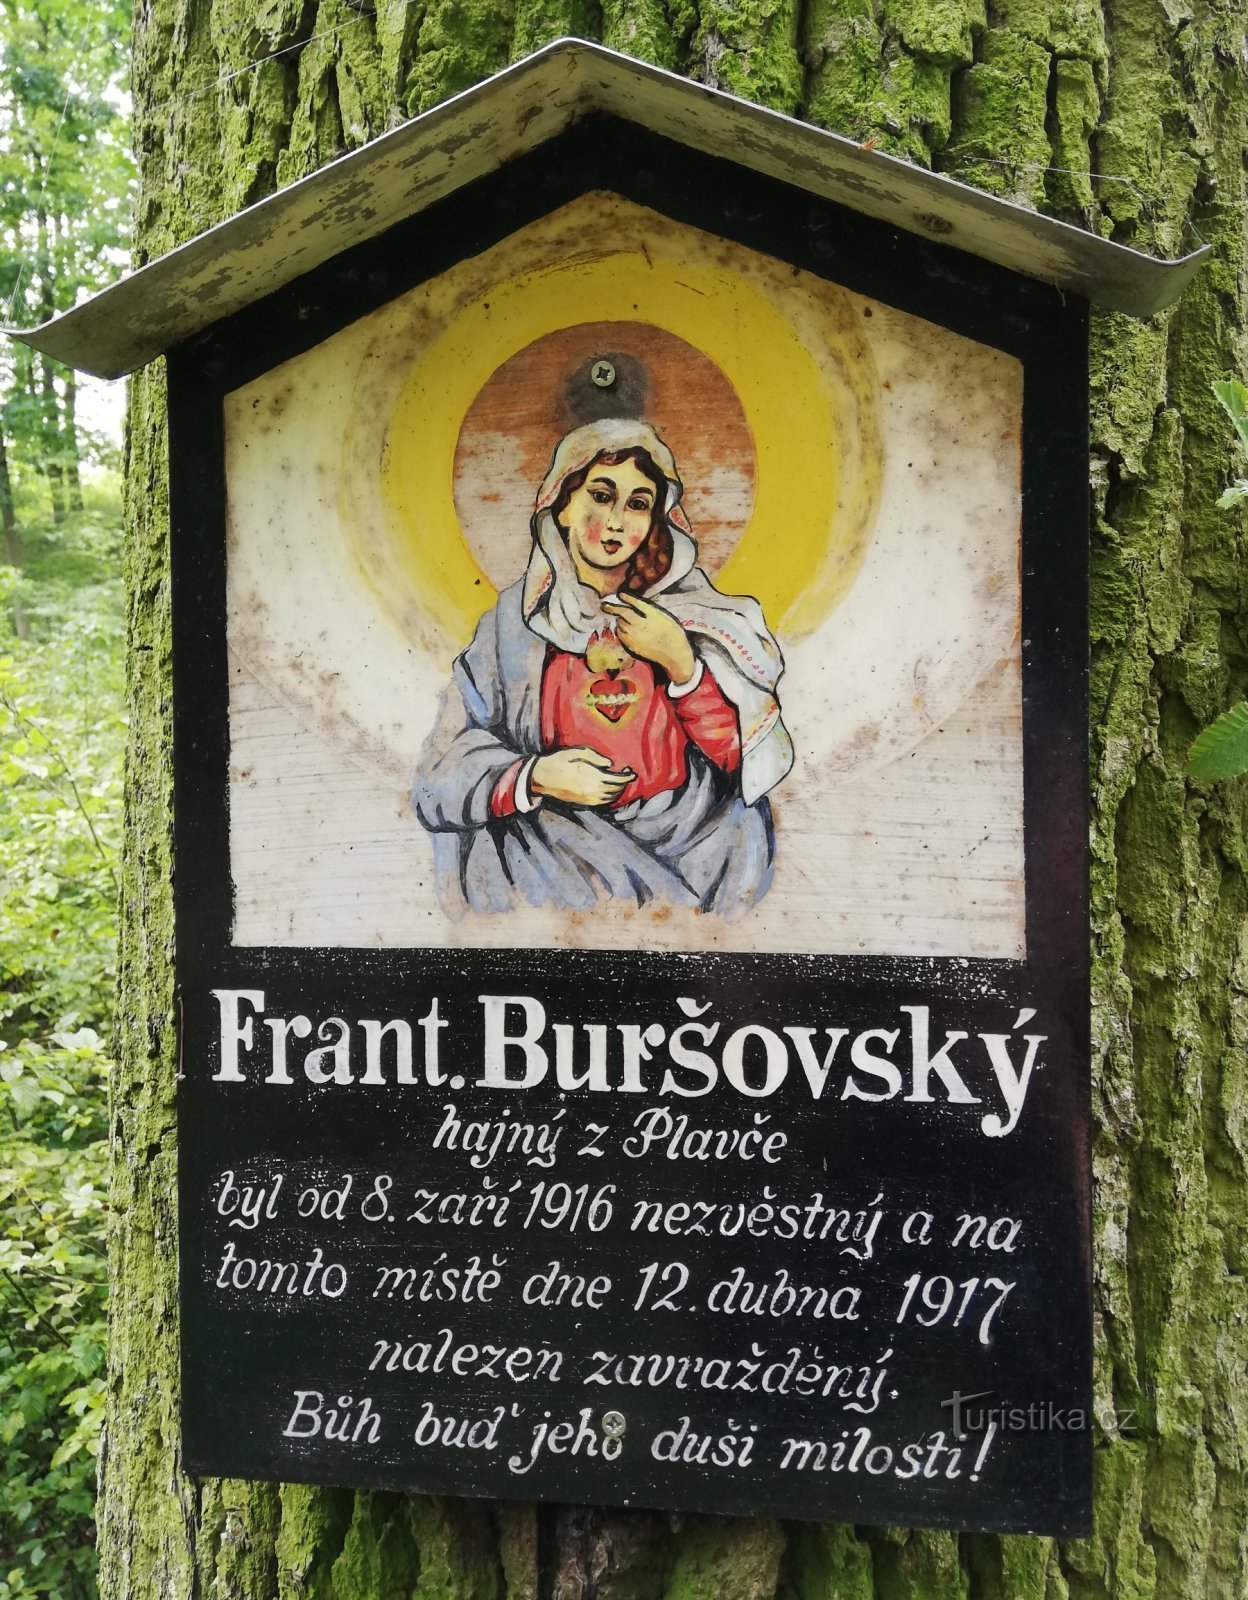 Anh hùng hay kẻ đào ngũ? Vụ sát hại người quản trò Buršovský ở Hluboké Mašůvky vào năm 1916.